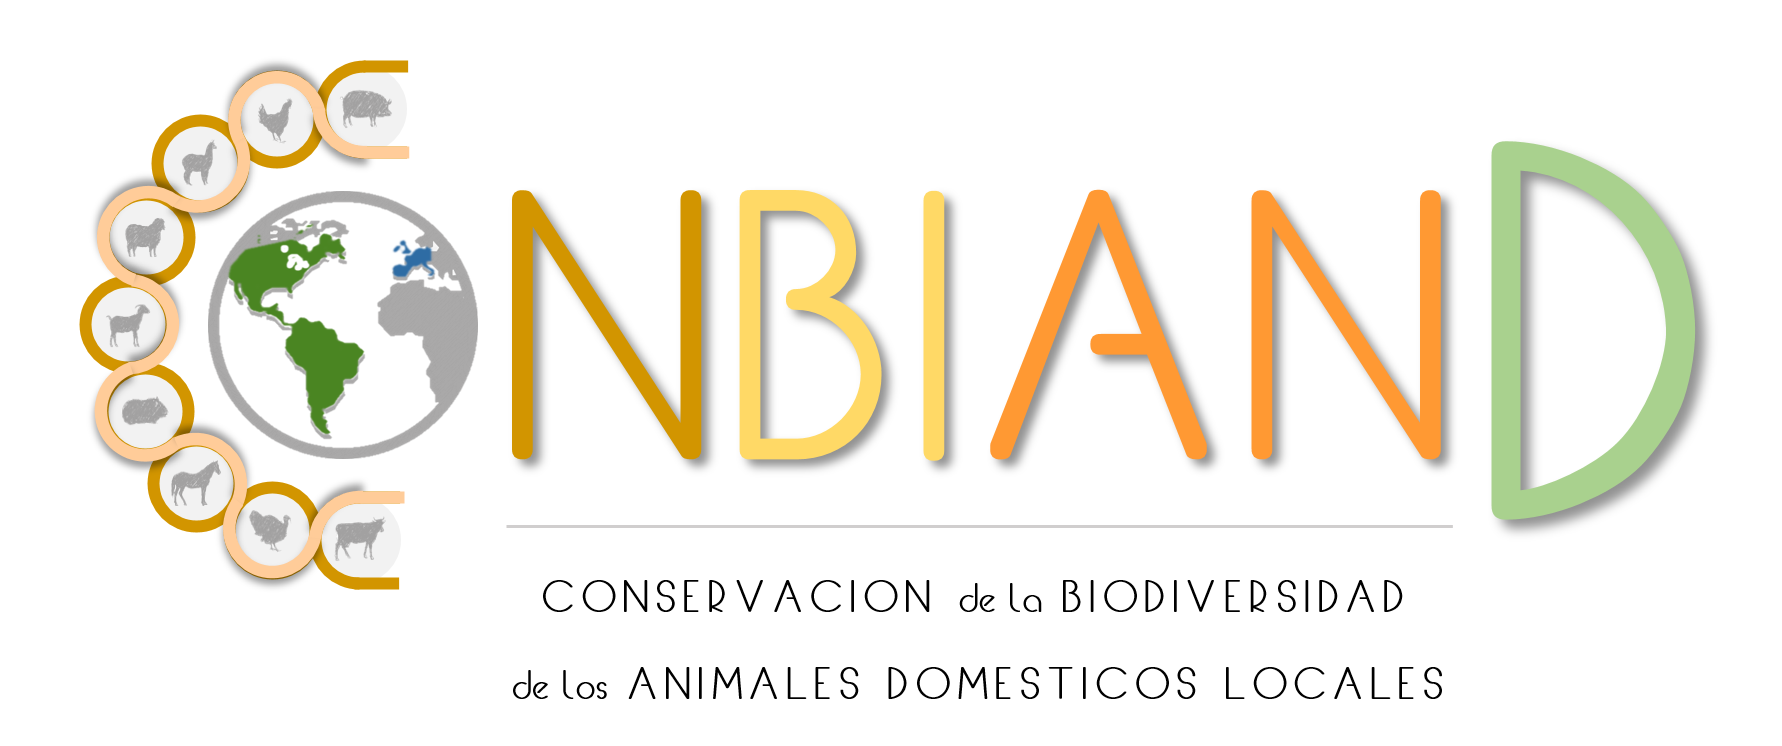 CONSERVACIÓN DE LA BIODIVERSIDAD DE LOS ANIMALES DOMESTICO LOCALES (NBIAND)